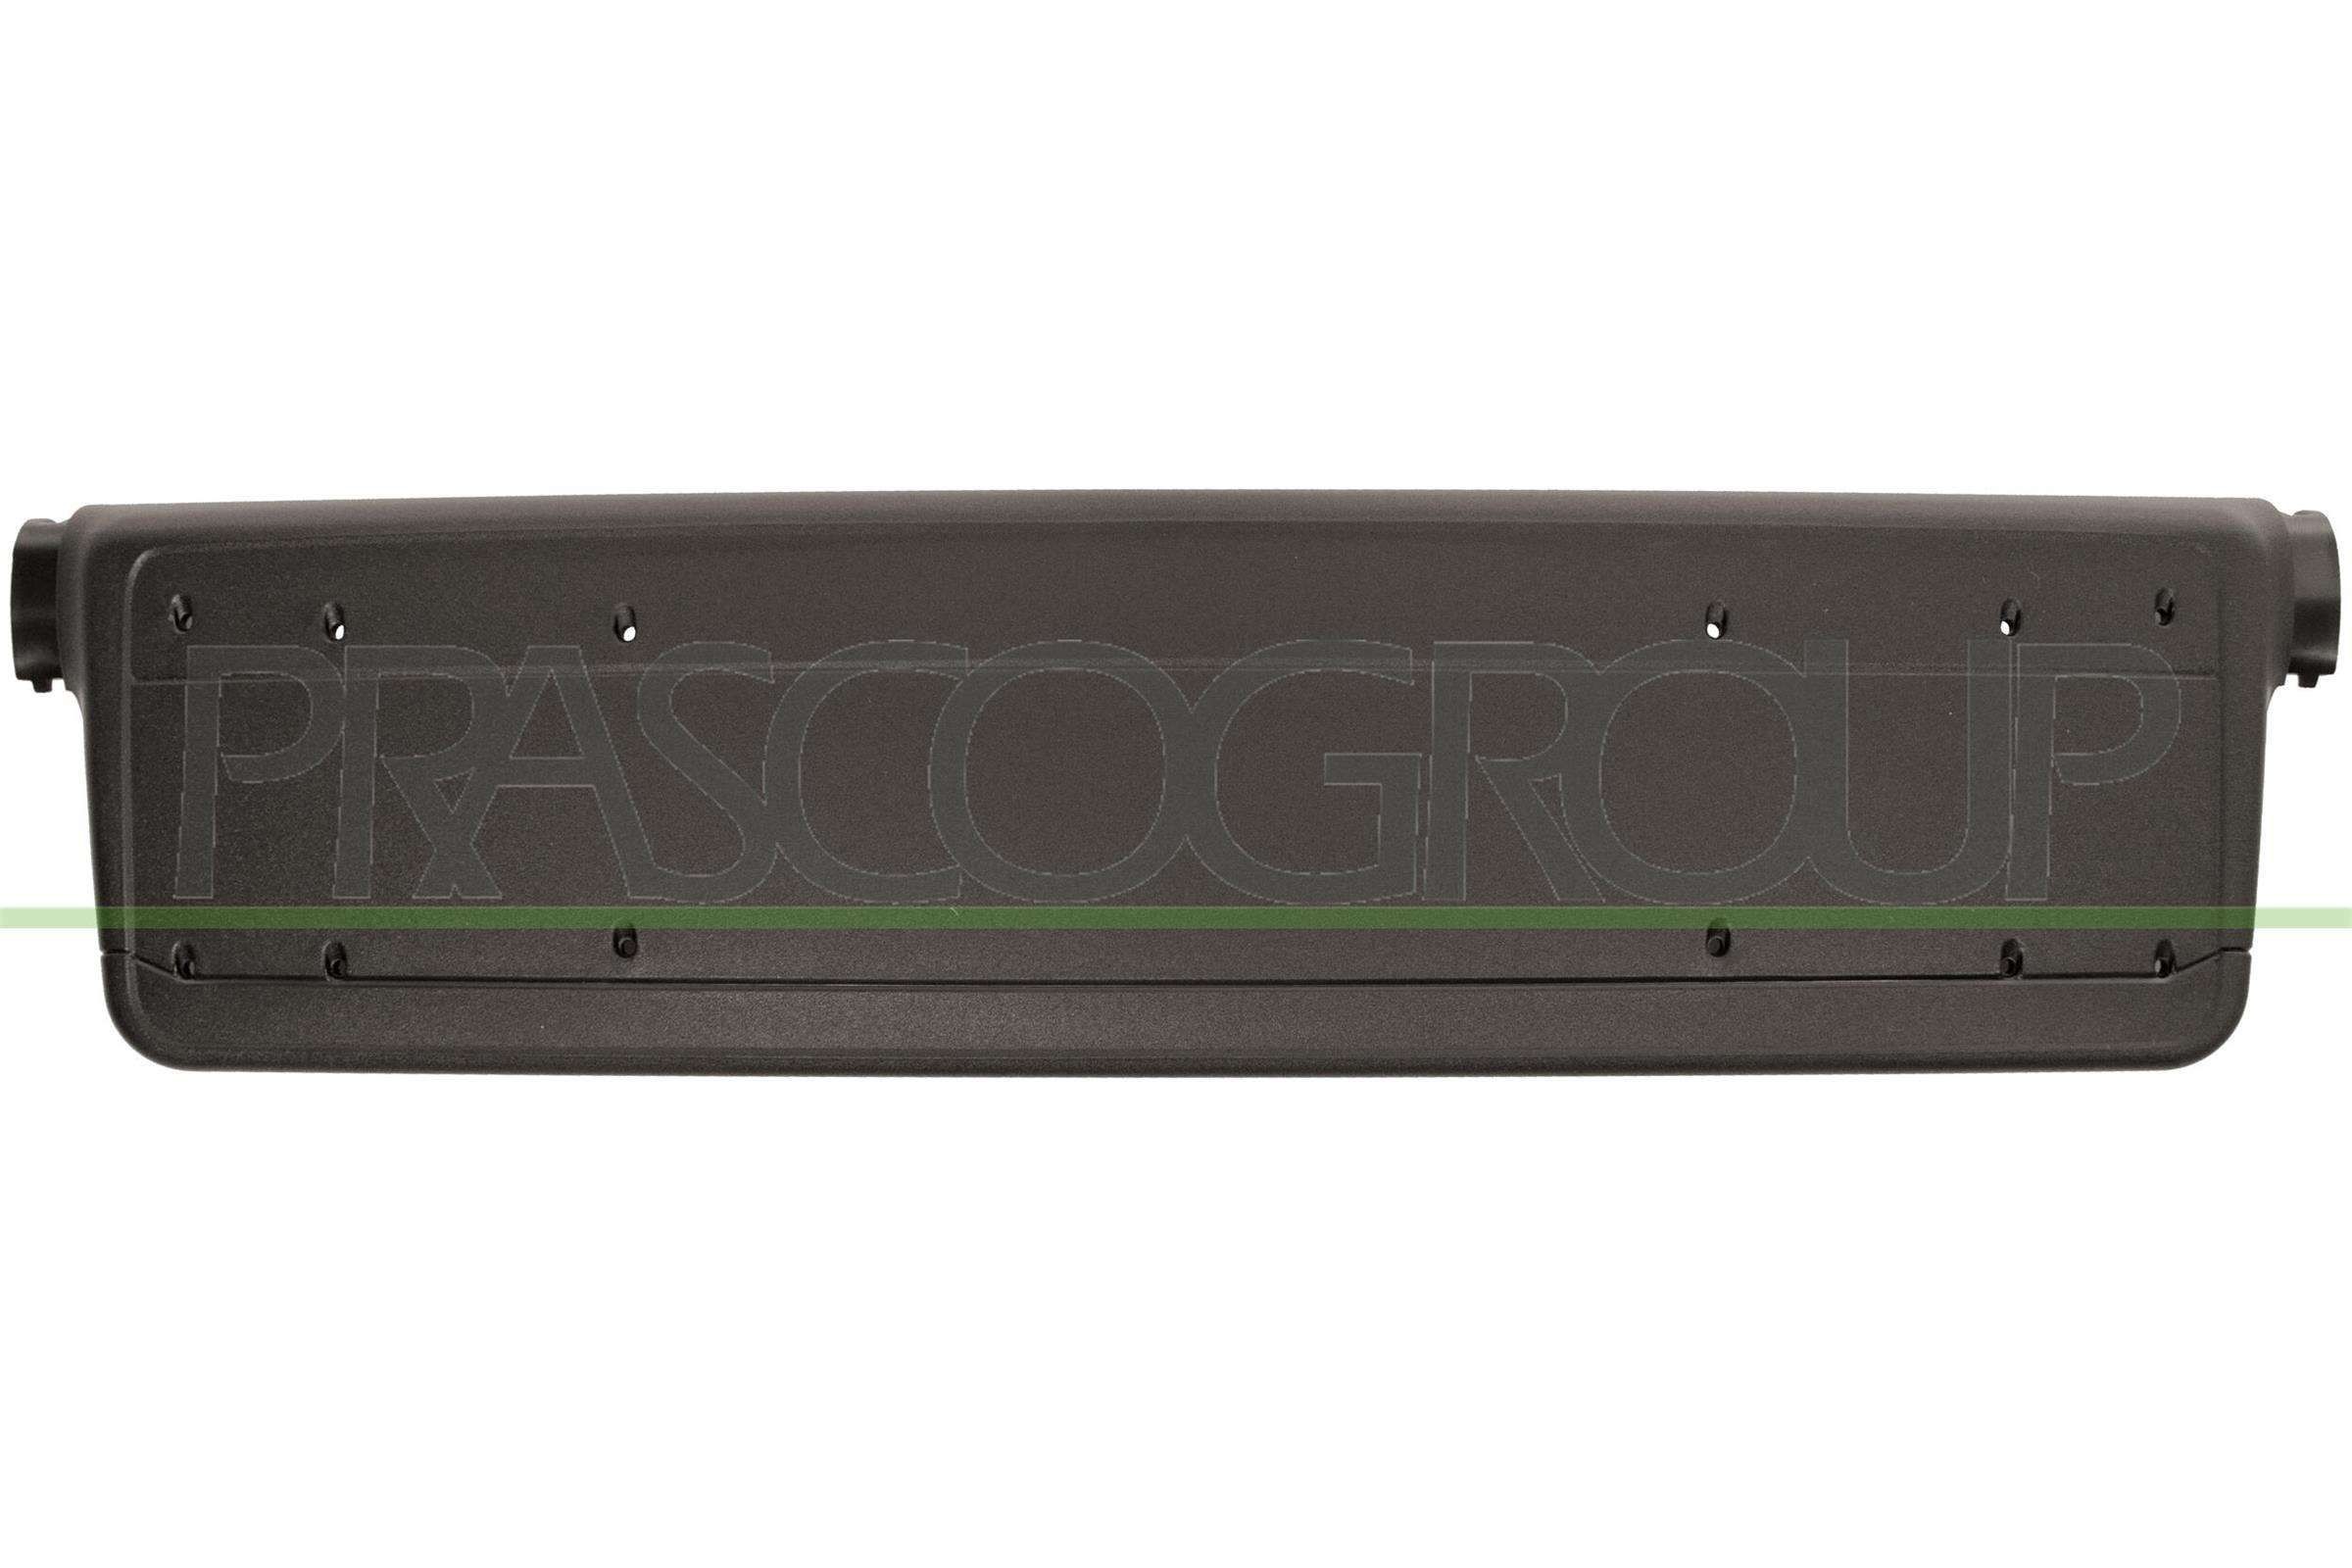 PRASCO BM0191539 Licence plate holder / bracket E46 Coupe